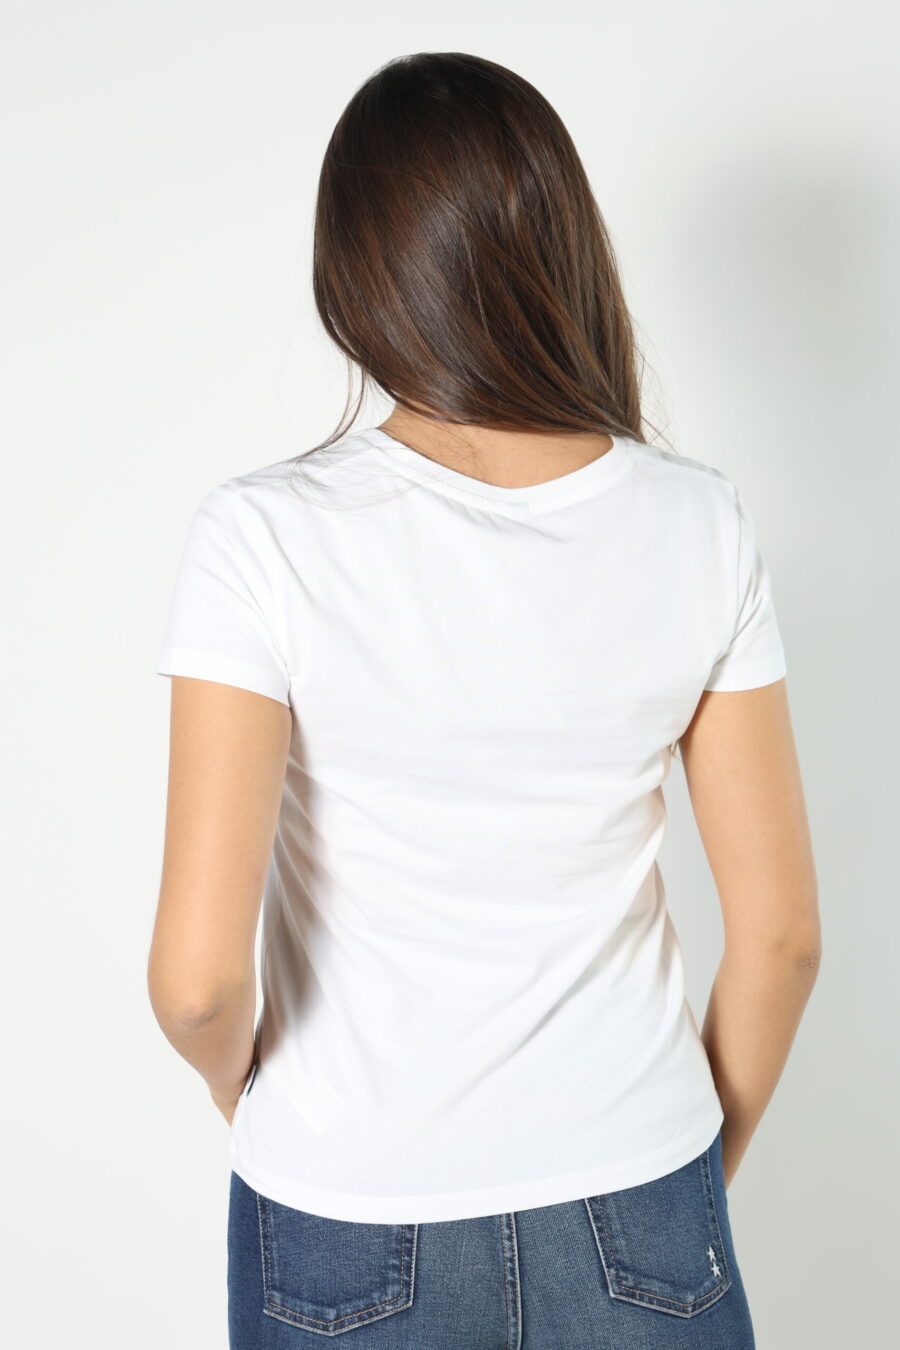 Camiseta blanca con logo parche oso "underbear" - 8052865435499 319 scaled